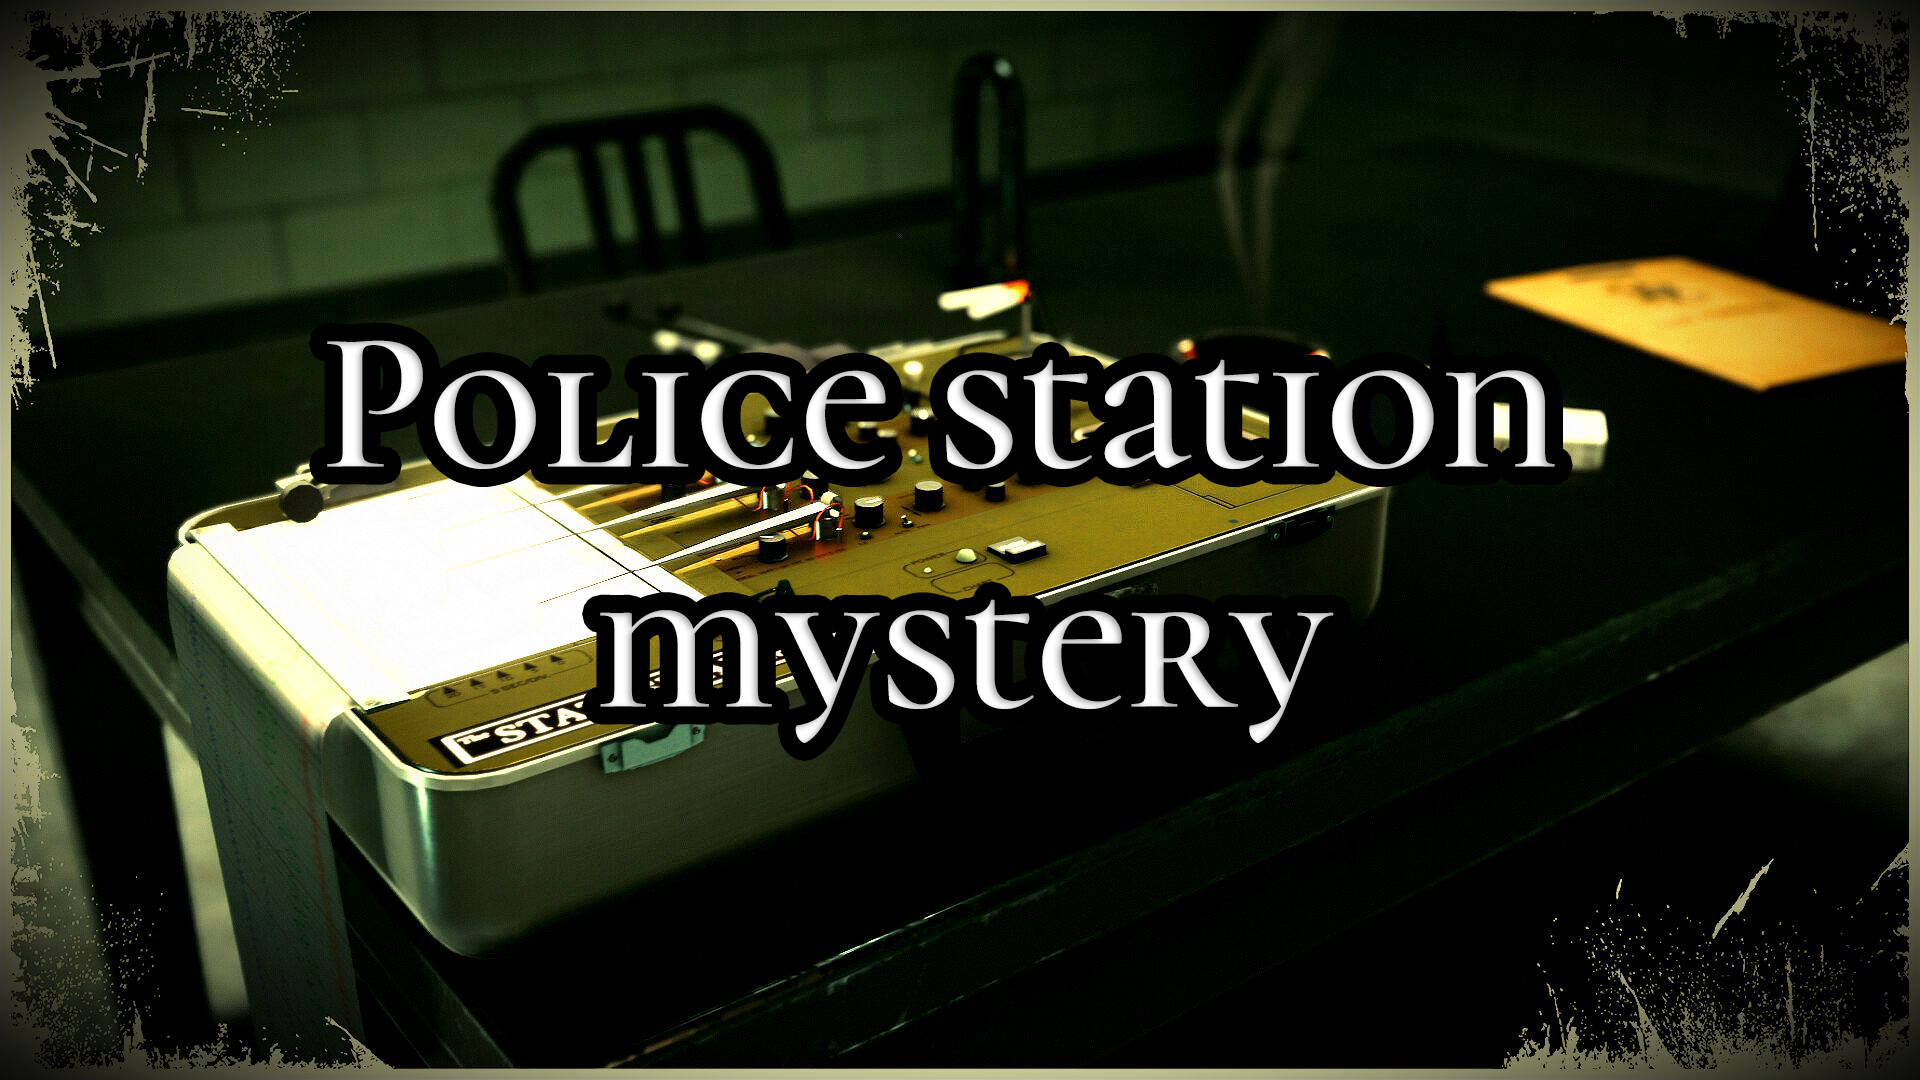 Police station mystery